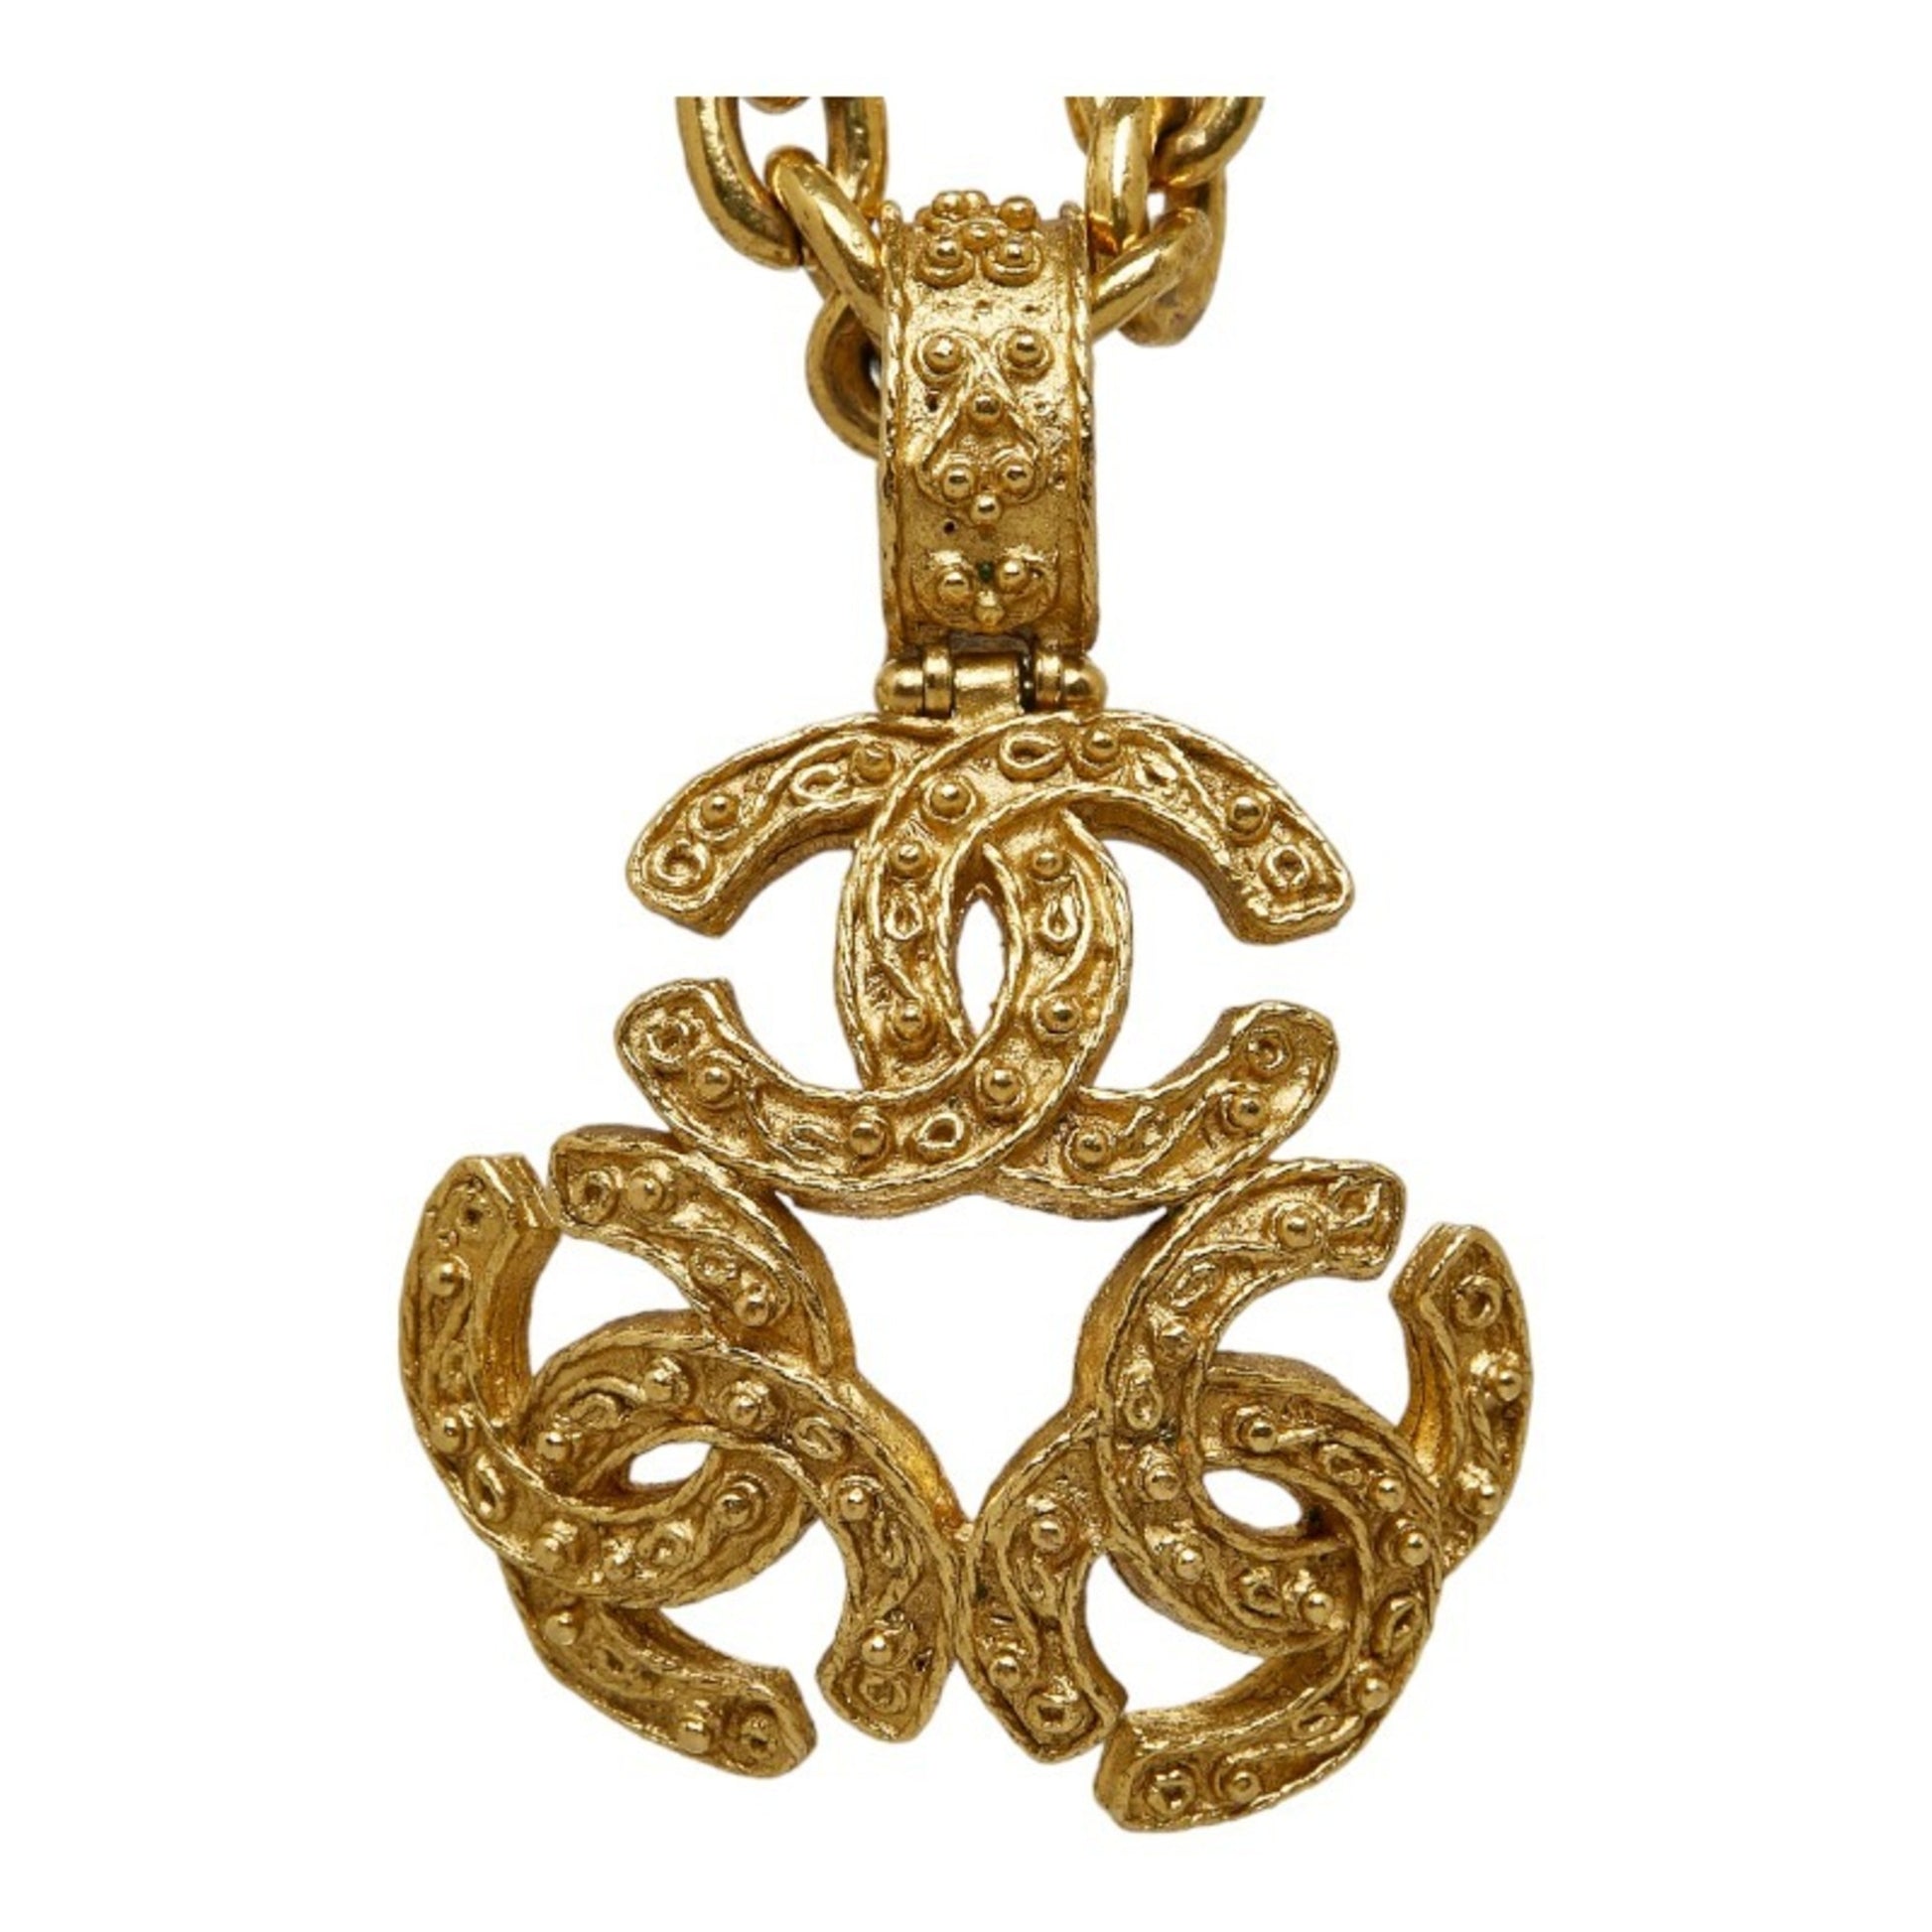 Coco Chanel 'cc' Necklace